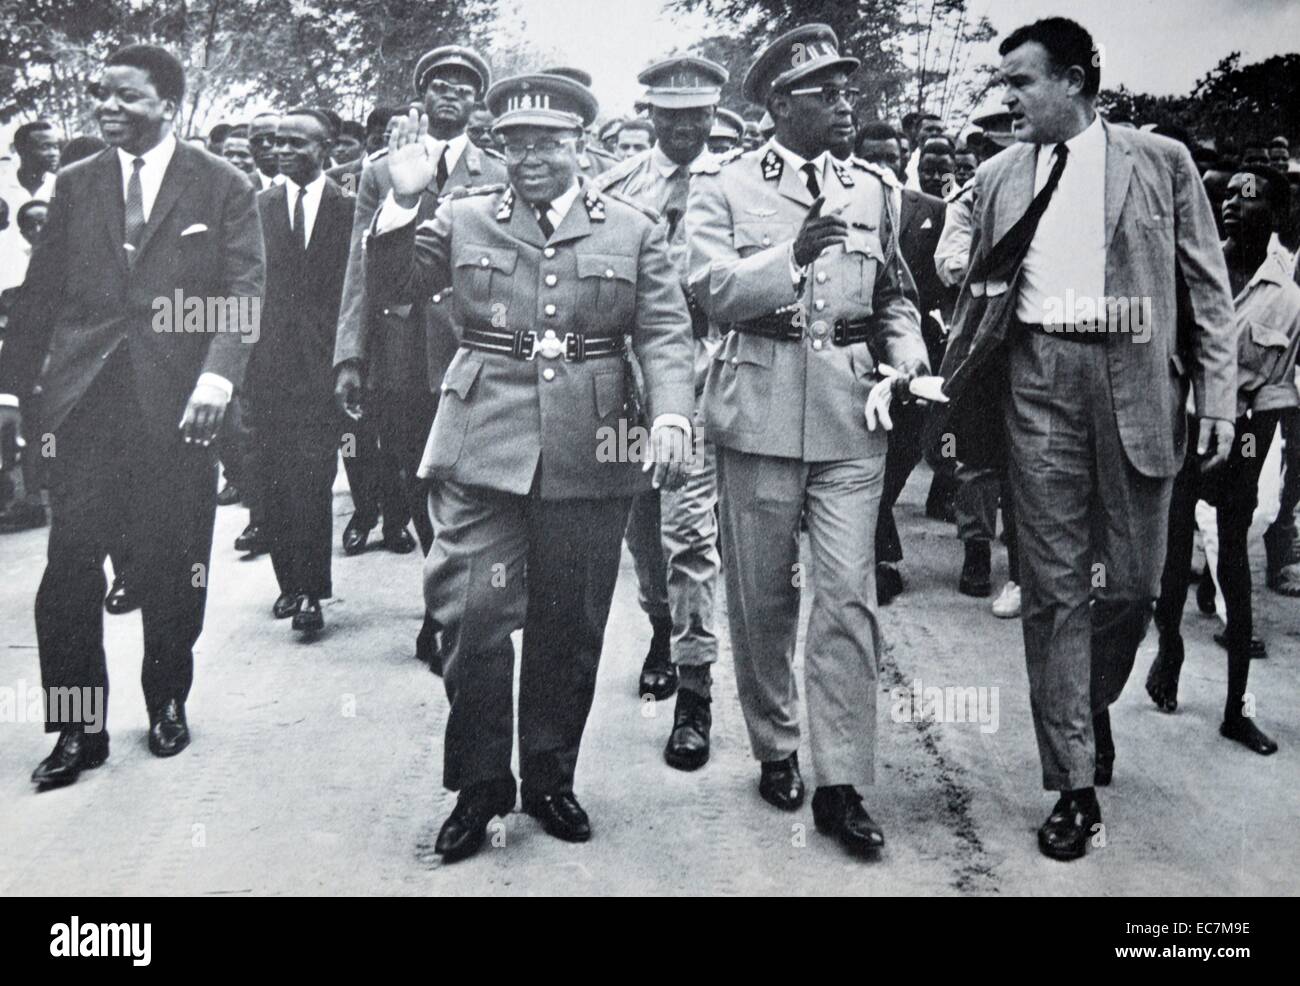 Koalition der Demokratischen Republik Kongo 1963 zu regieren. Die Staats- und Regierungschefs im März durch die Hauptstadt zu zeigen Einheit. Moise tshombe (links), Joseph Kasavubu (Mitte) und Joseph Mobutu (2. von rechts). Stockfoto